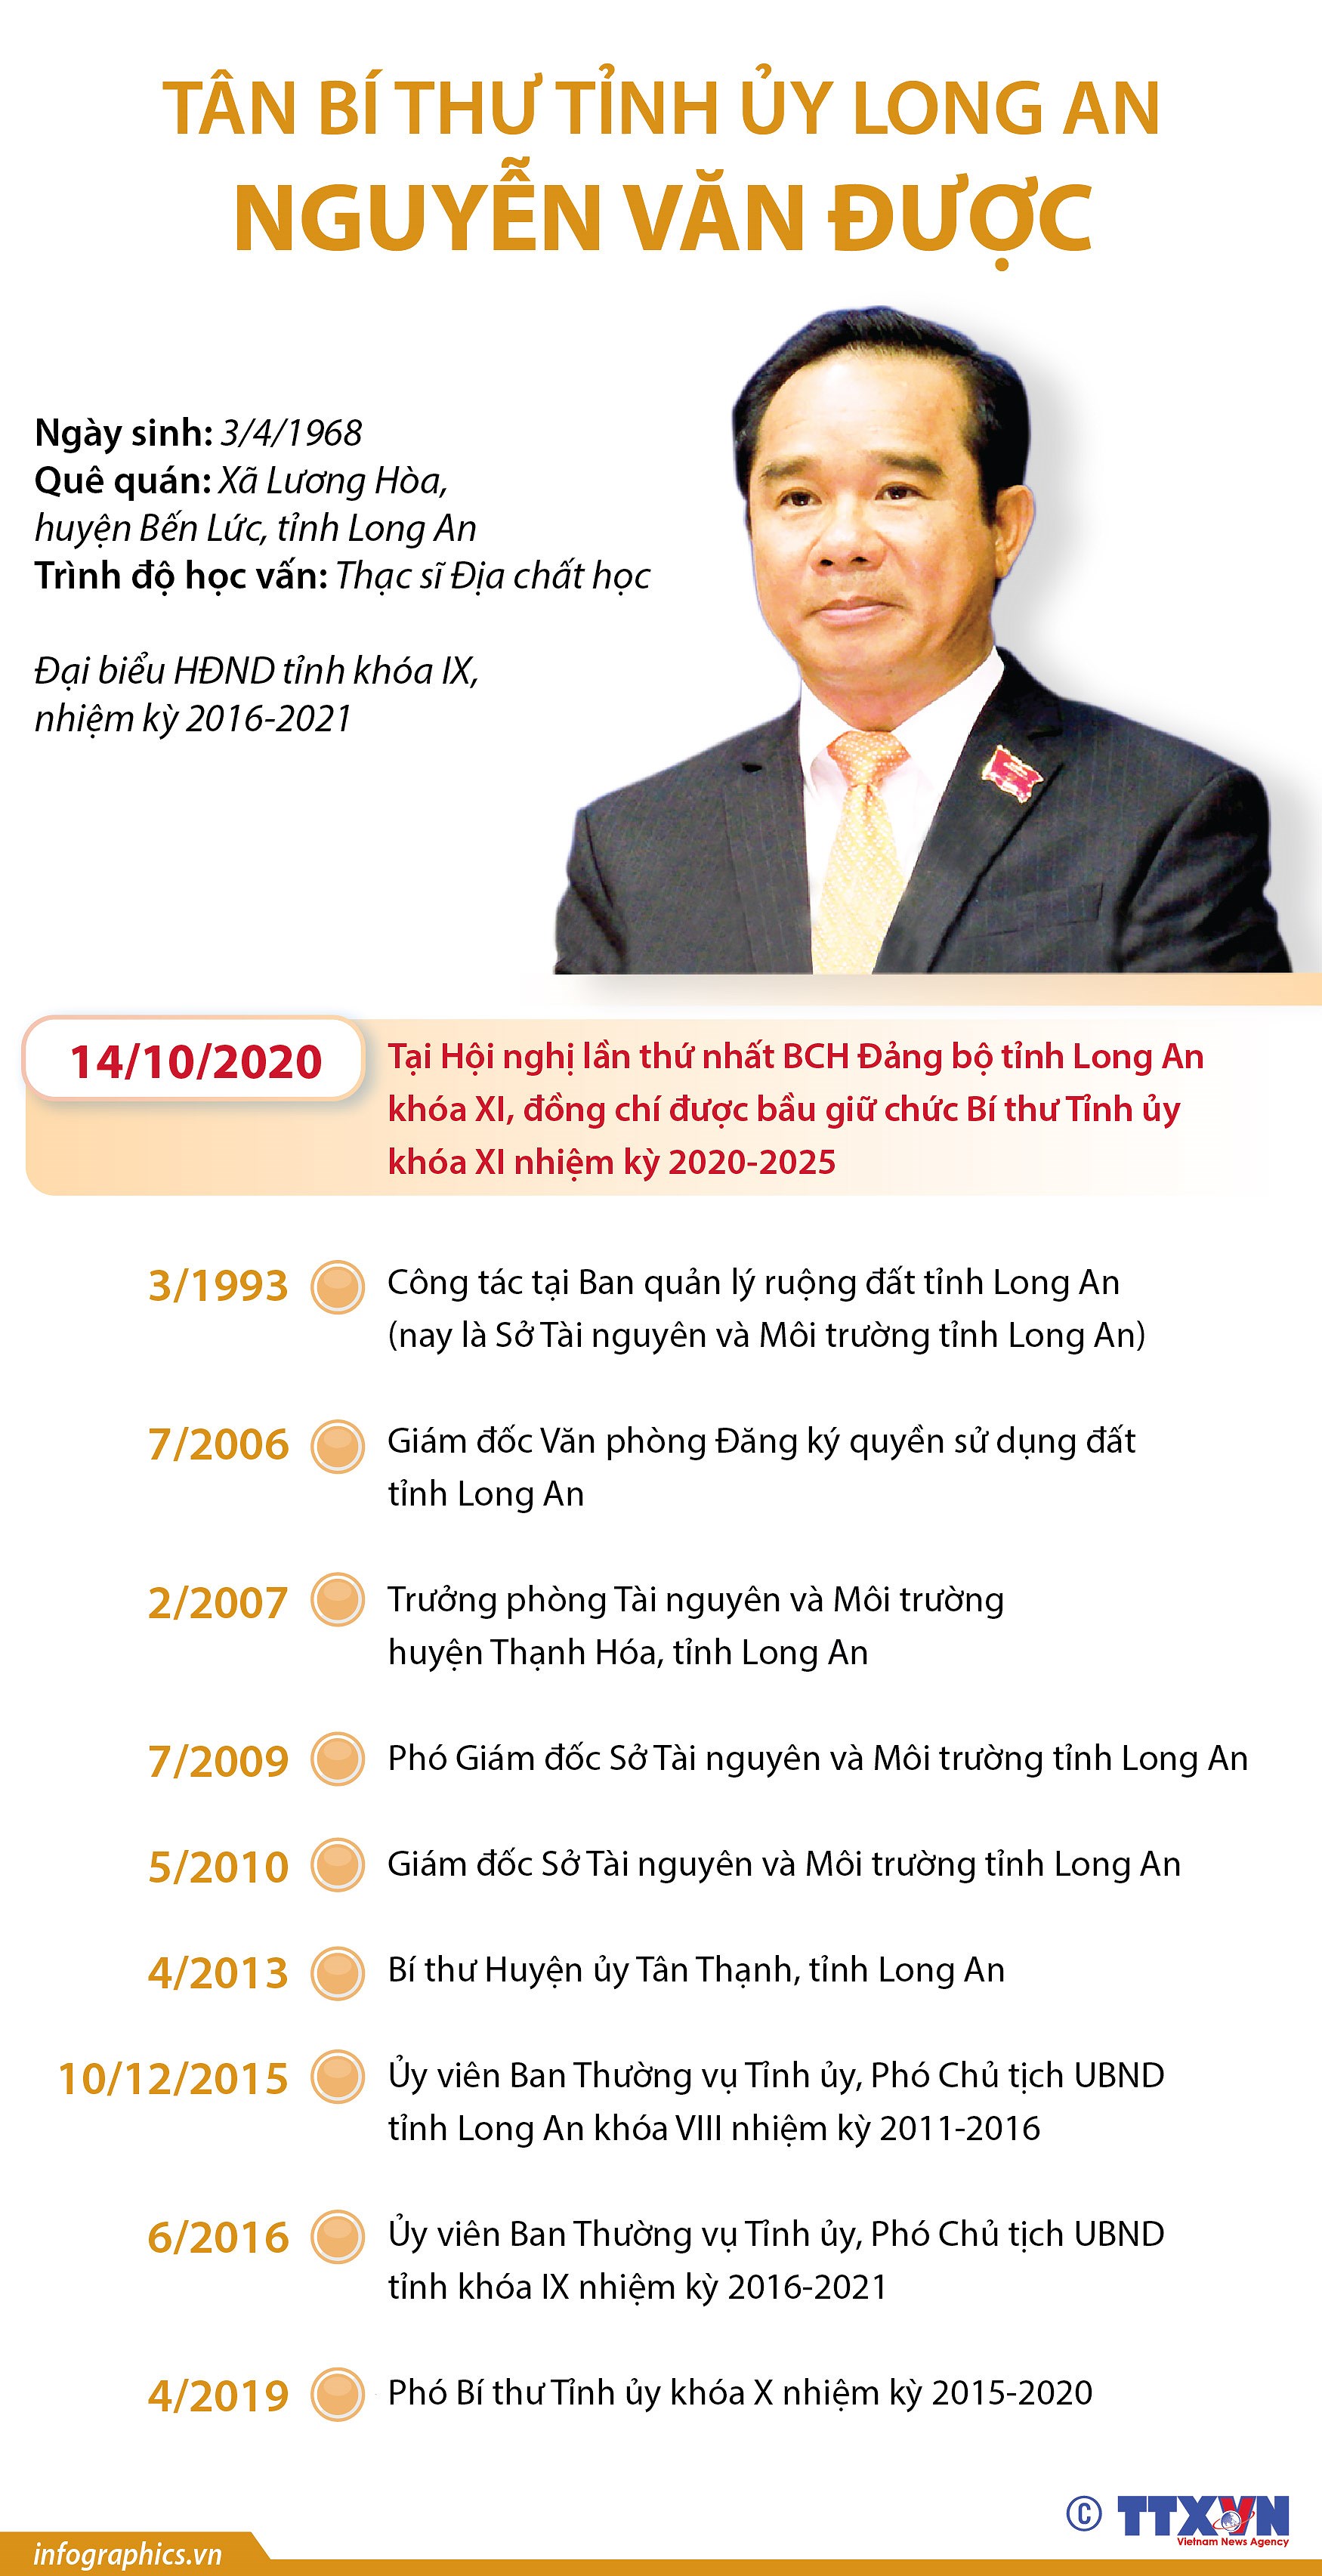 [Infographics] Tan Bi thu Tinh uy Long An Nguyen Van Duoc hinh anh 1